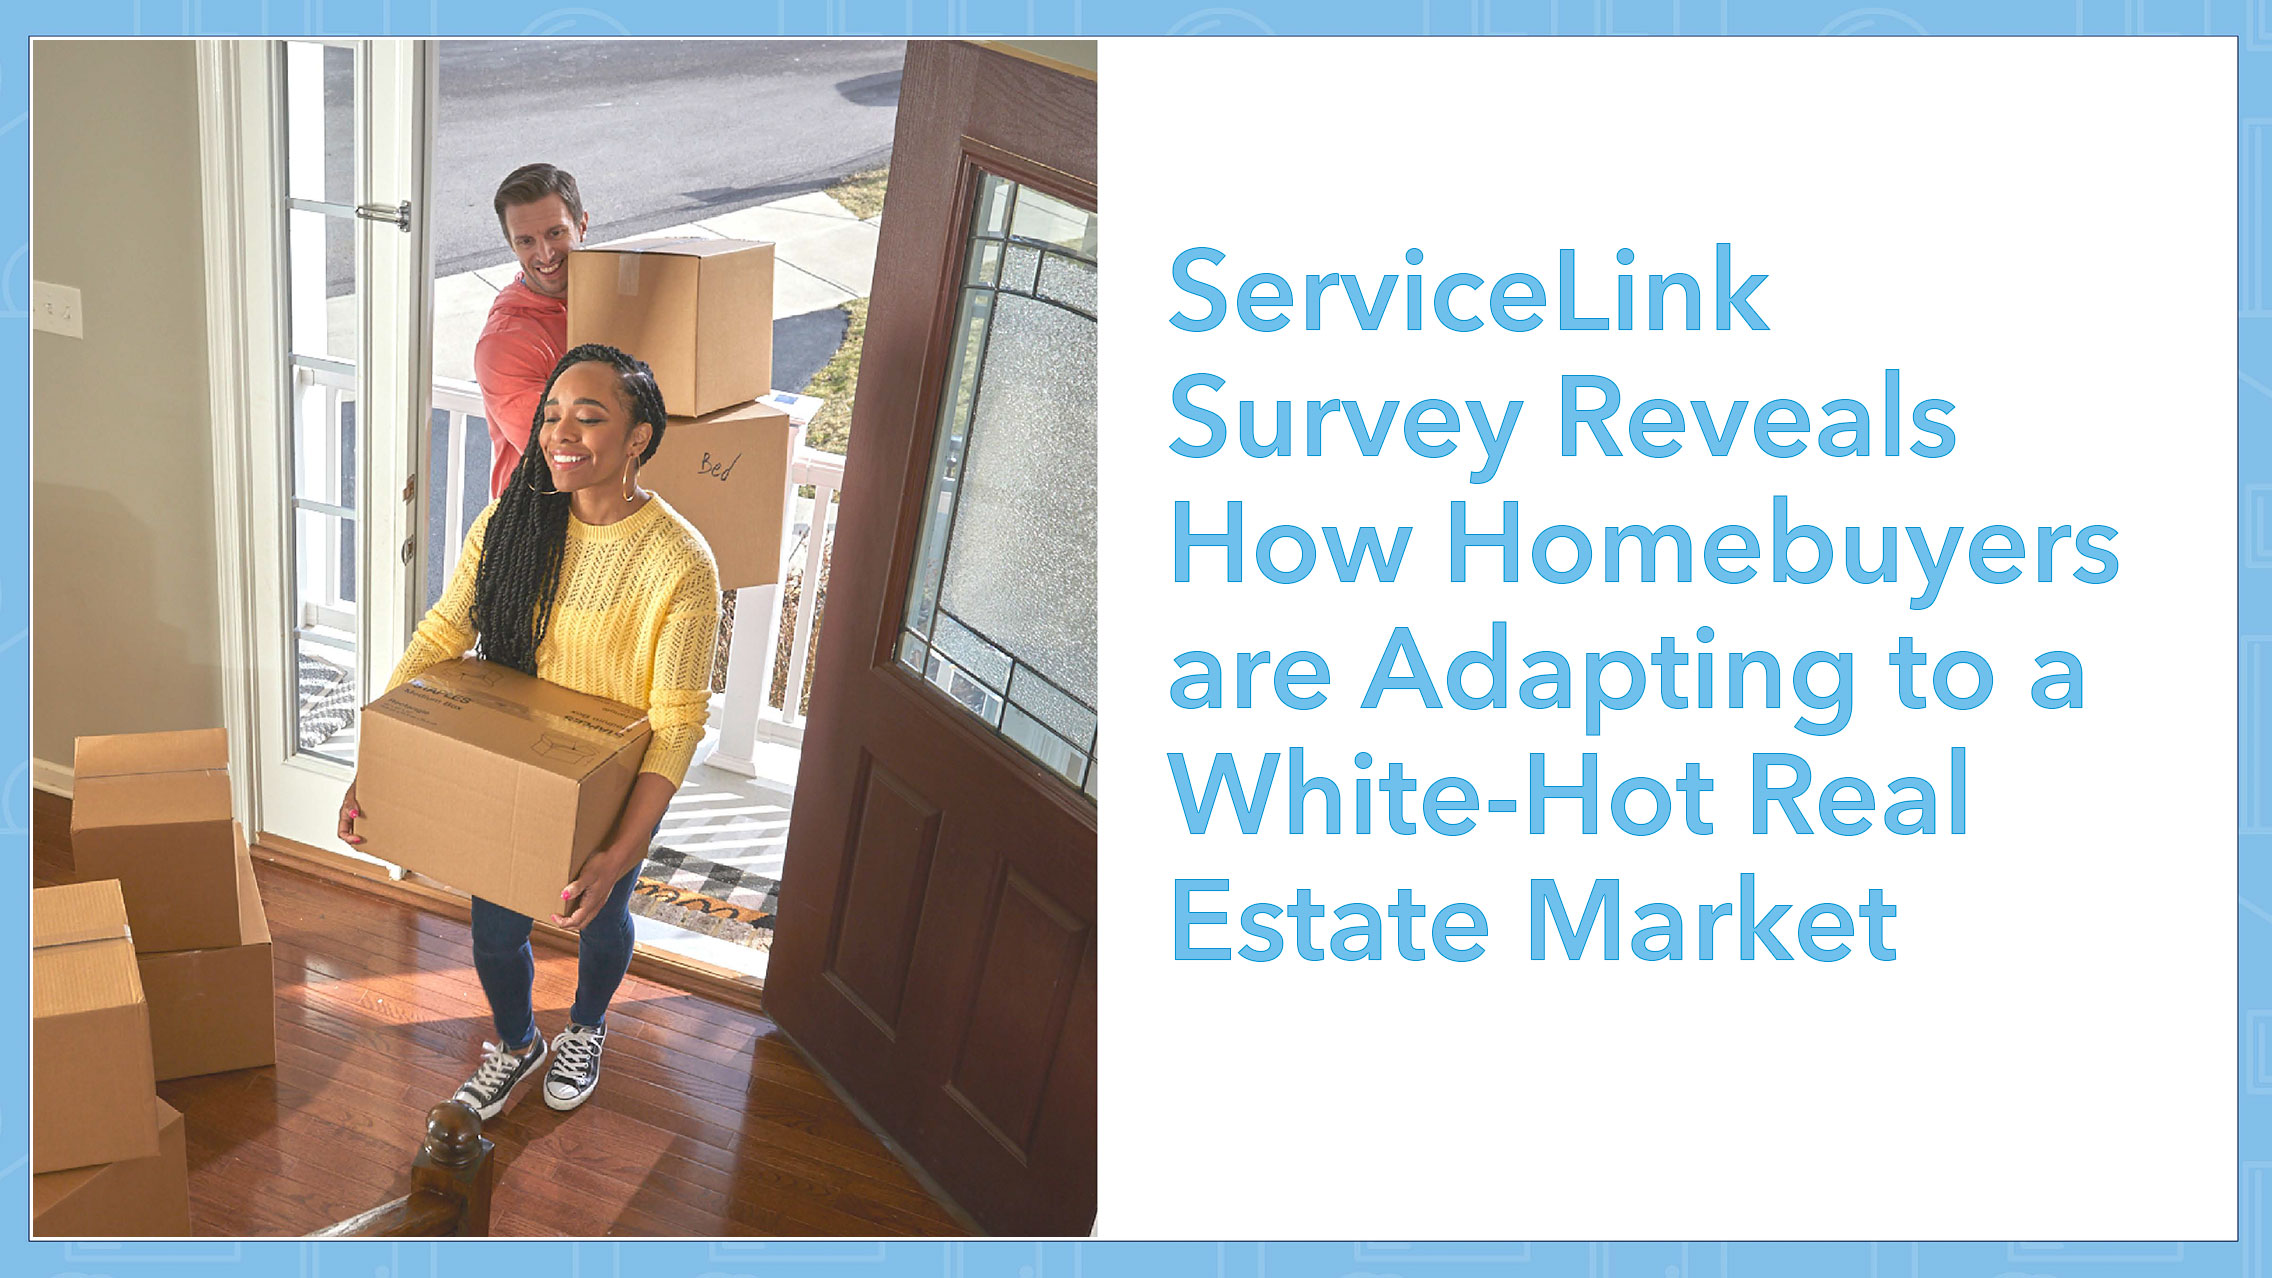 ServiceLink homebuyers adjusting to market